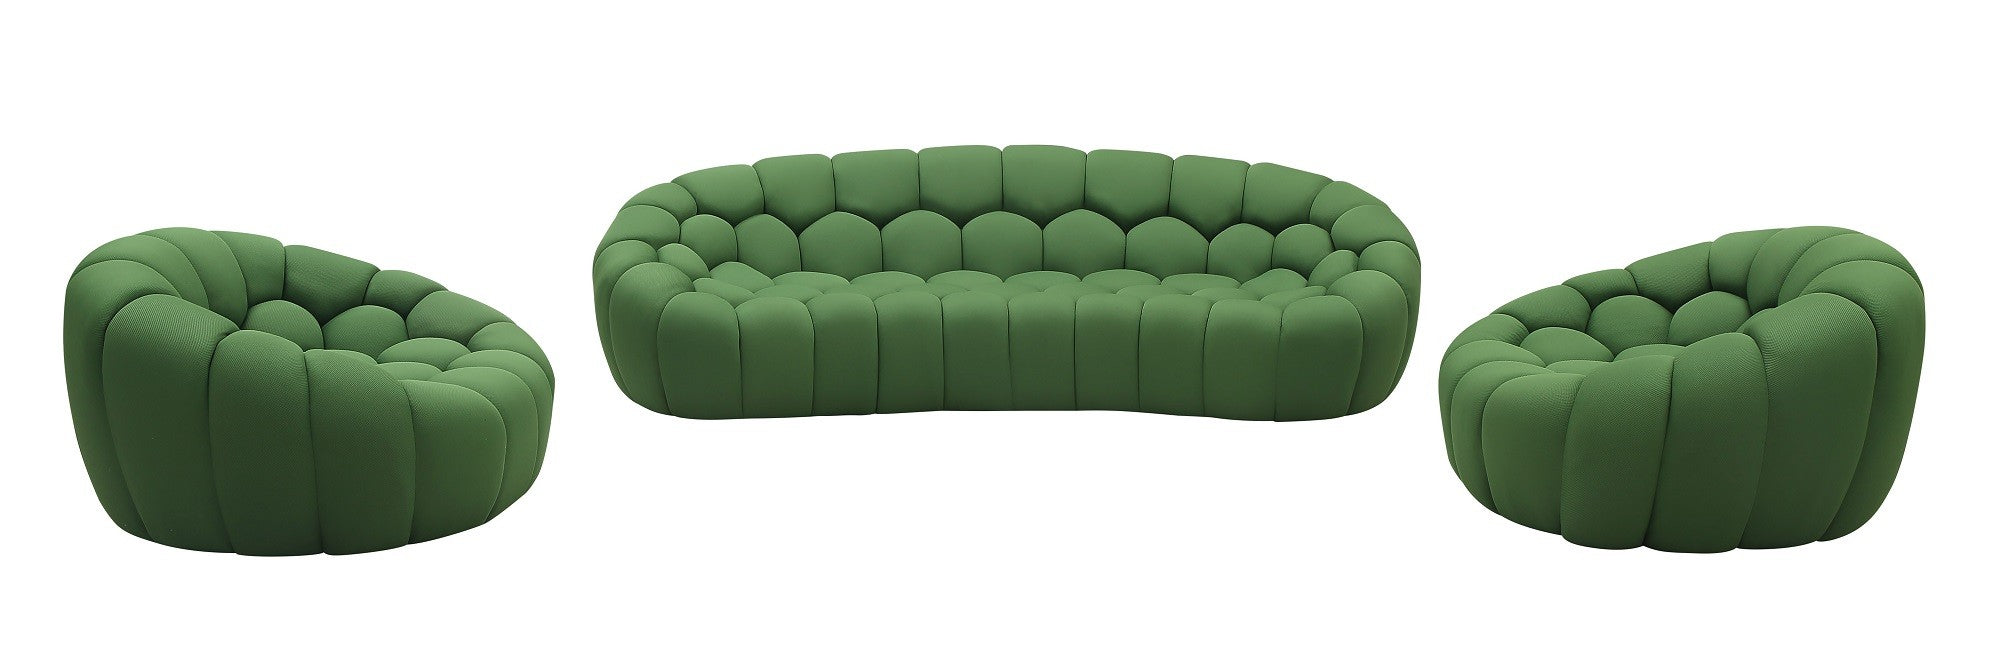 J&M Furniture - Fantasy 5 Piece Sofa Living Room Set in Green - 18442-5SET-GN